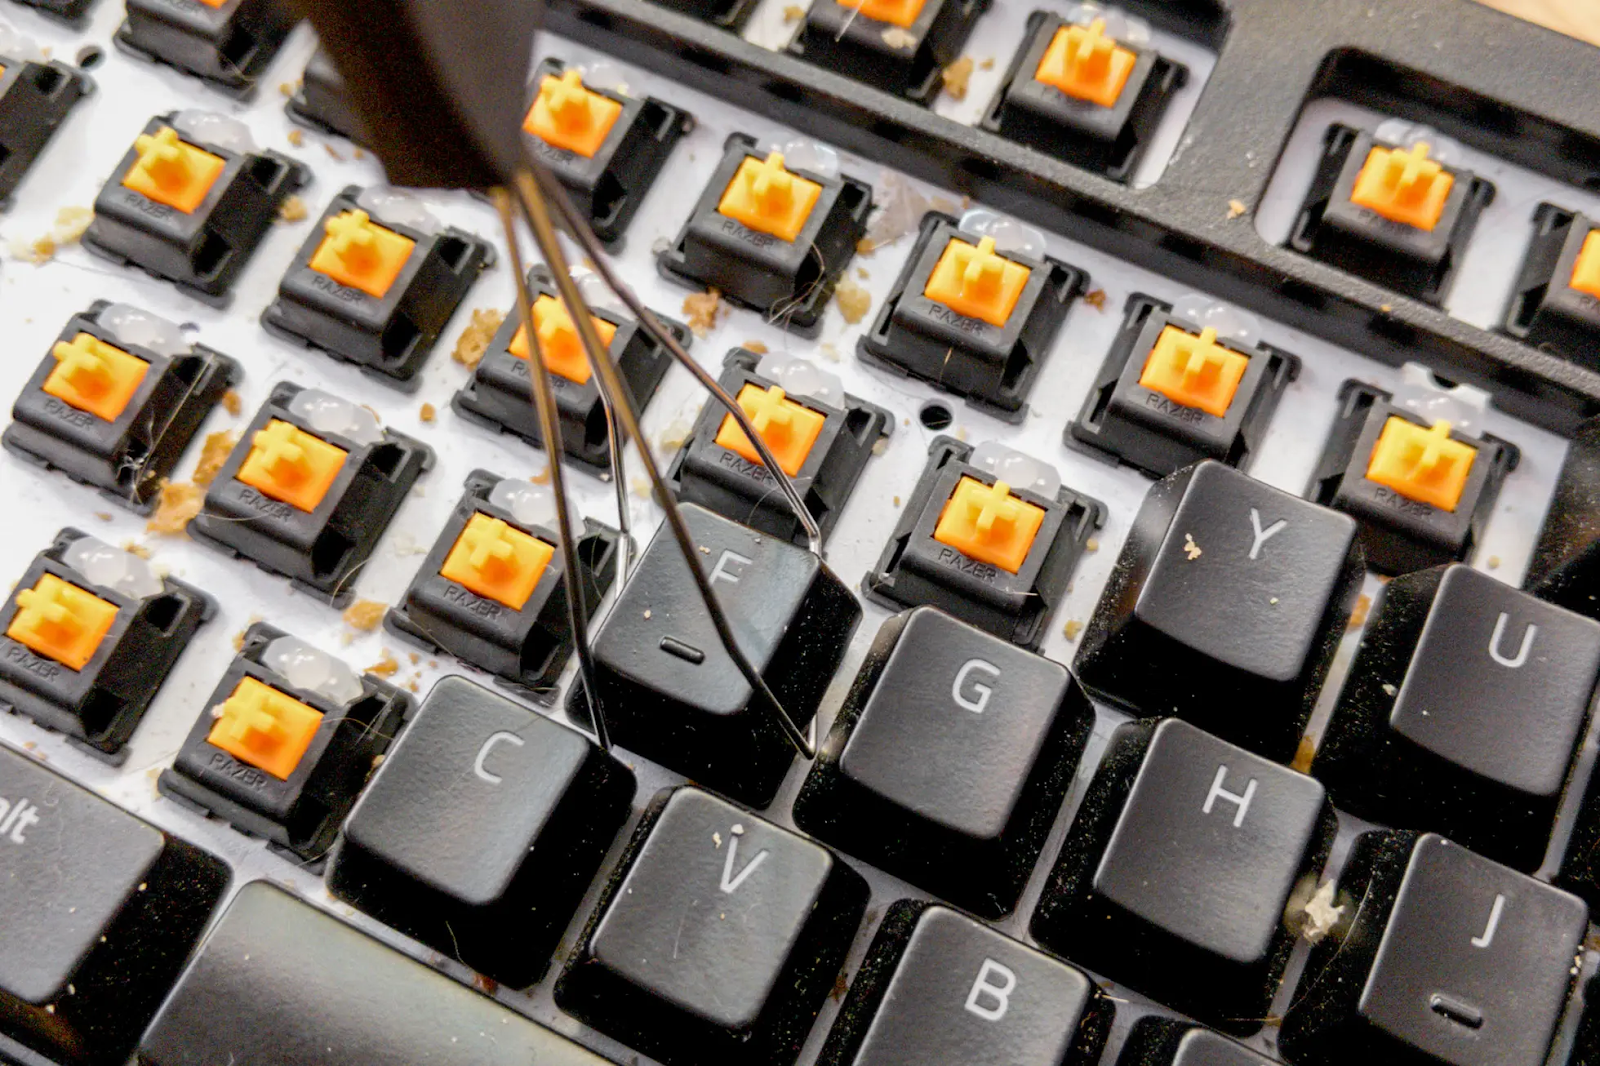 Cómo limpiar el teclado mecanico de tu PC Gamer - Fullh4rd TV %